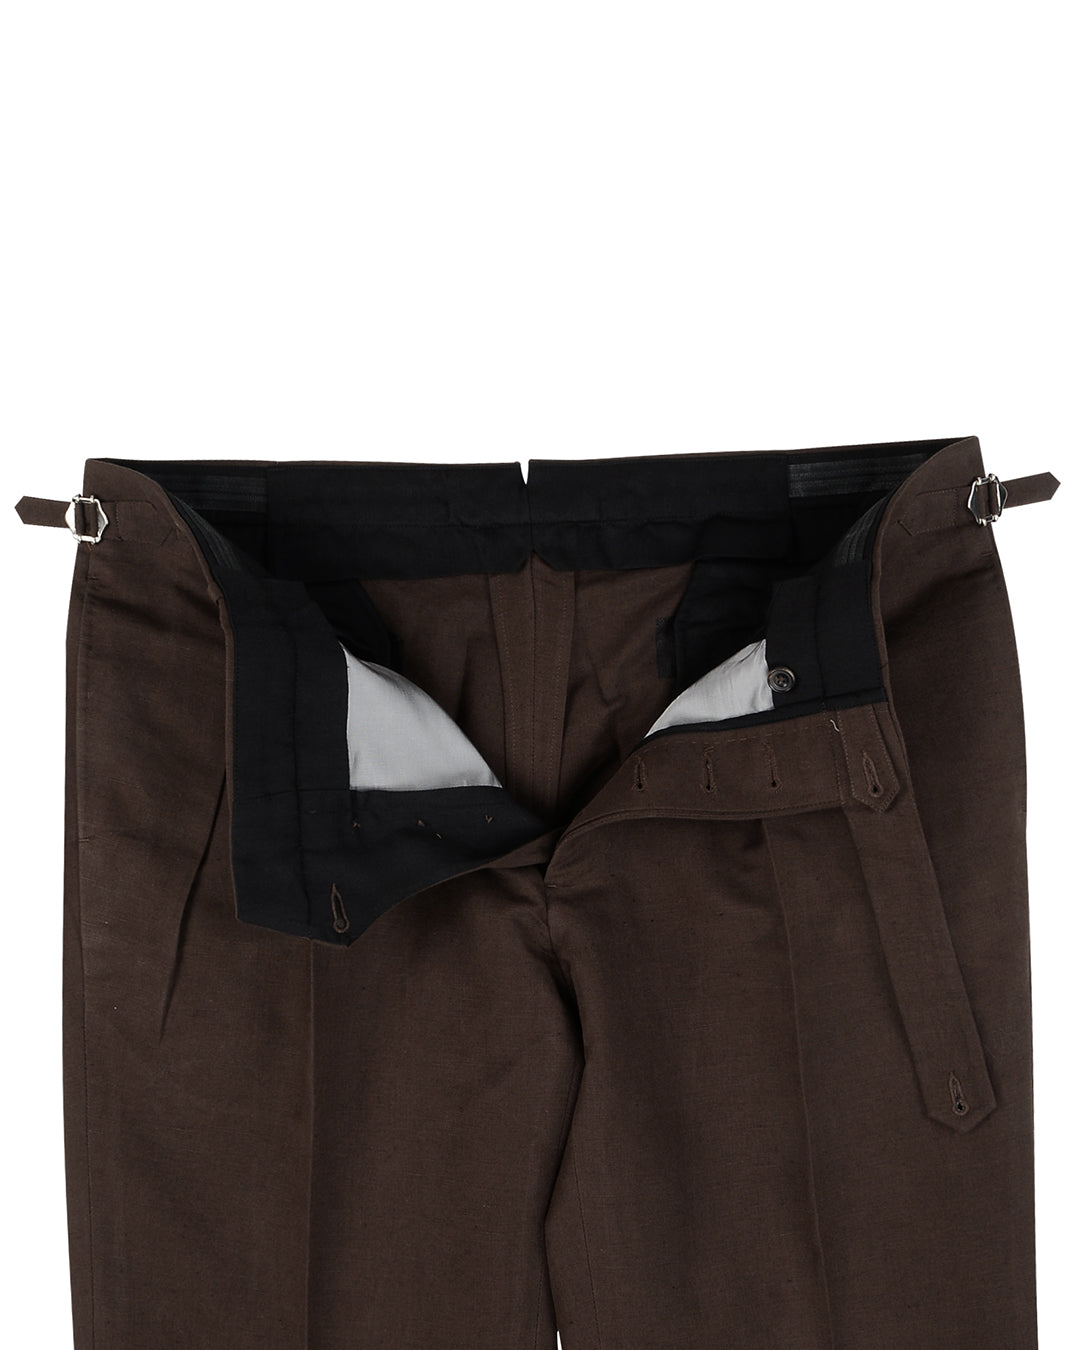 Linen:Brown Plain Pants